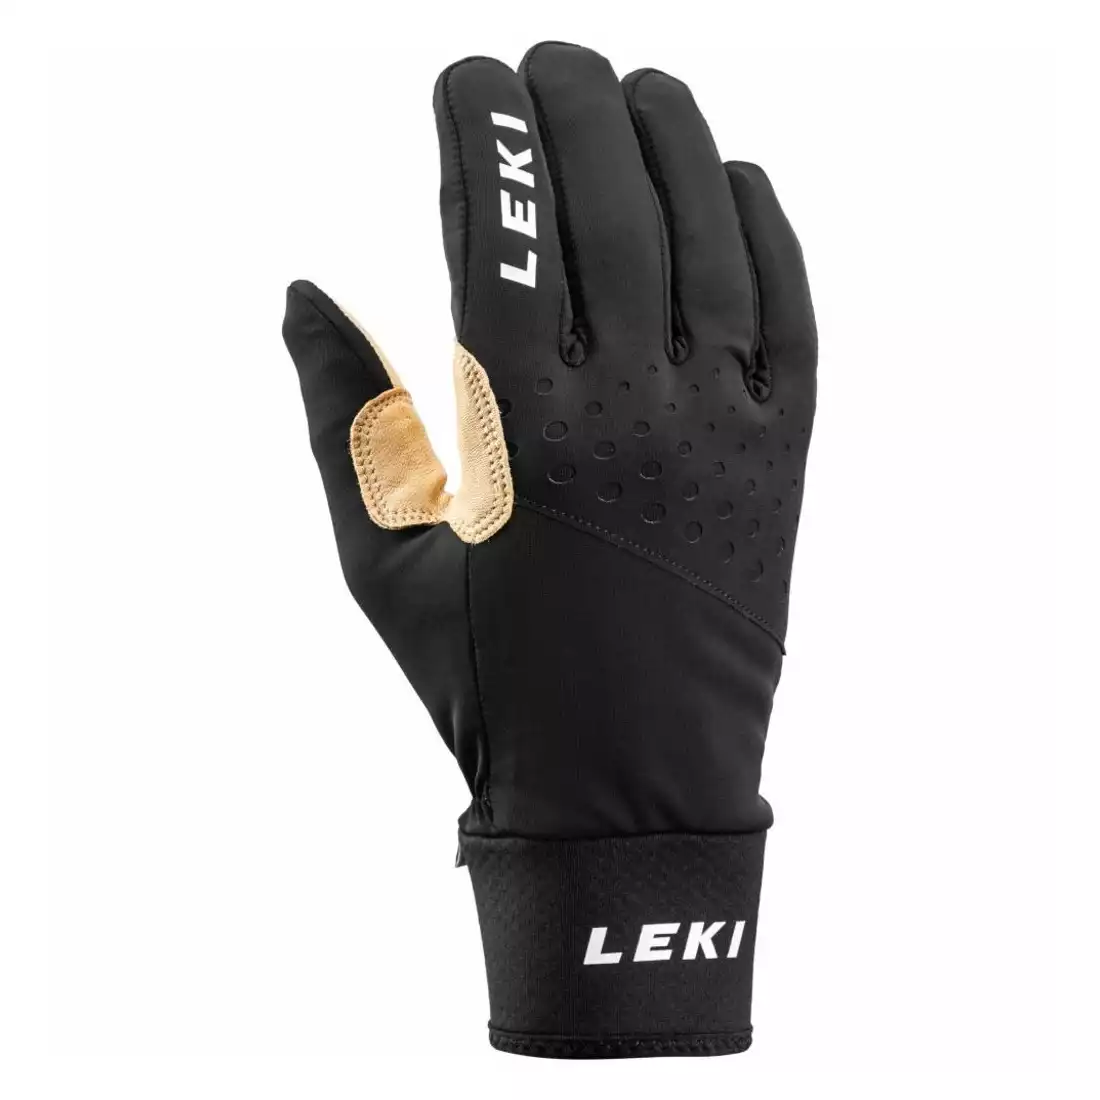 LEKI Nordic Race Premium mănuși de iarnă, negru și bej